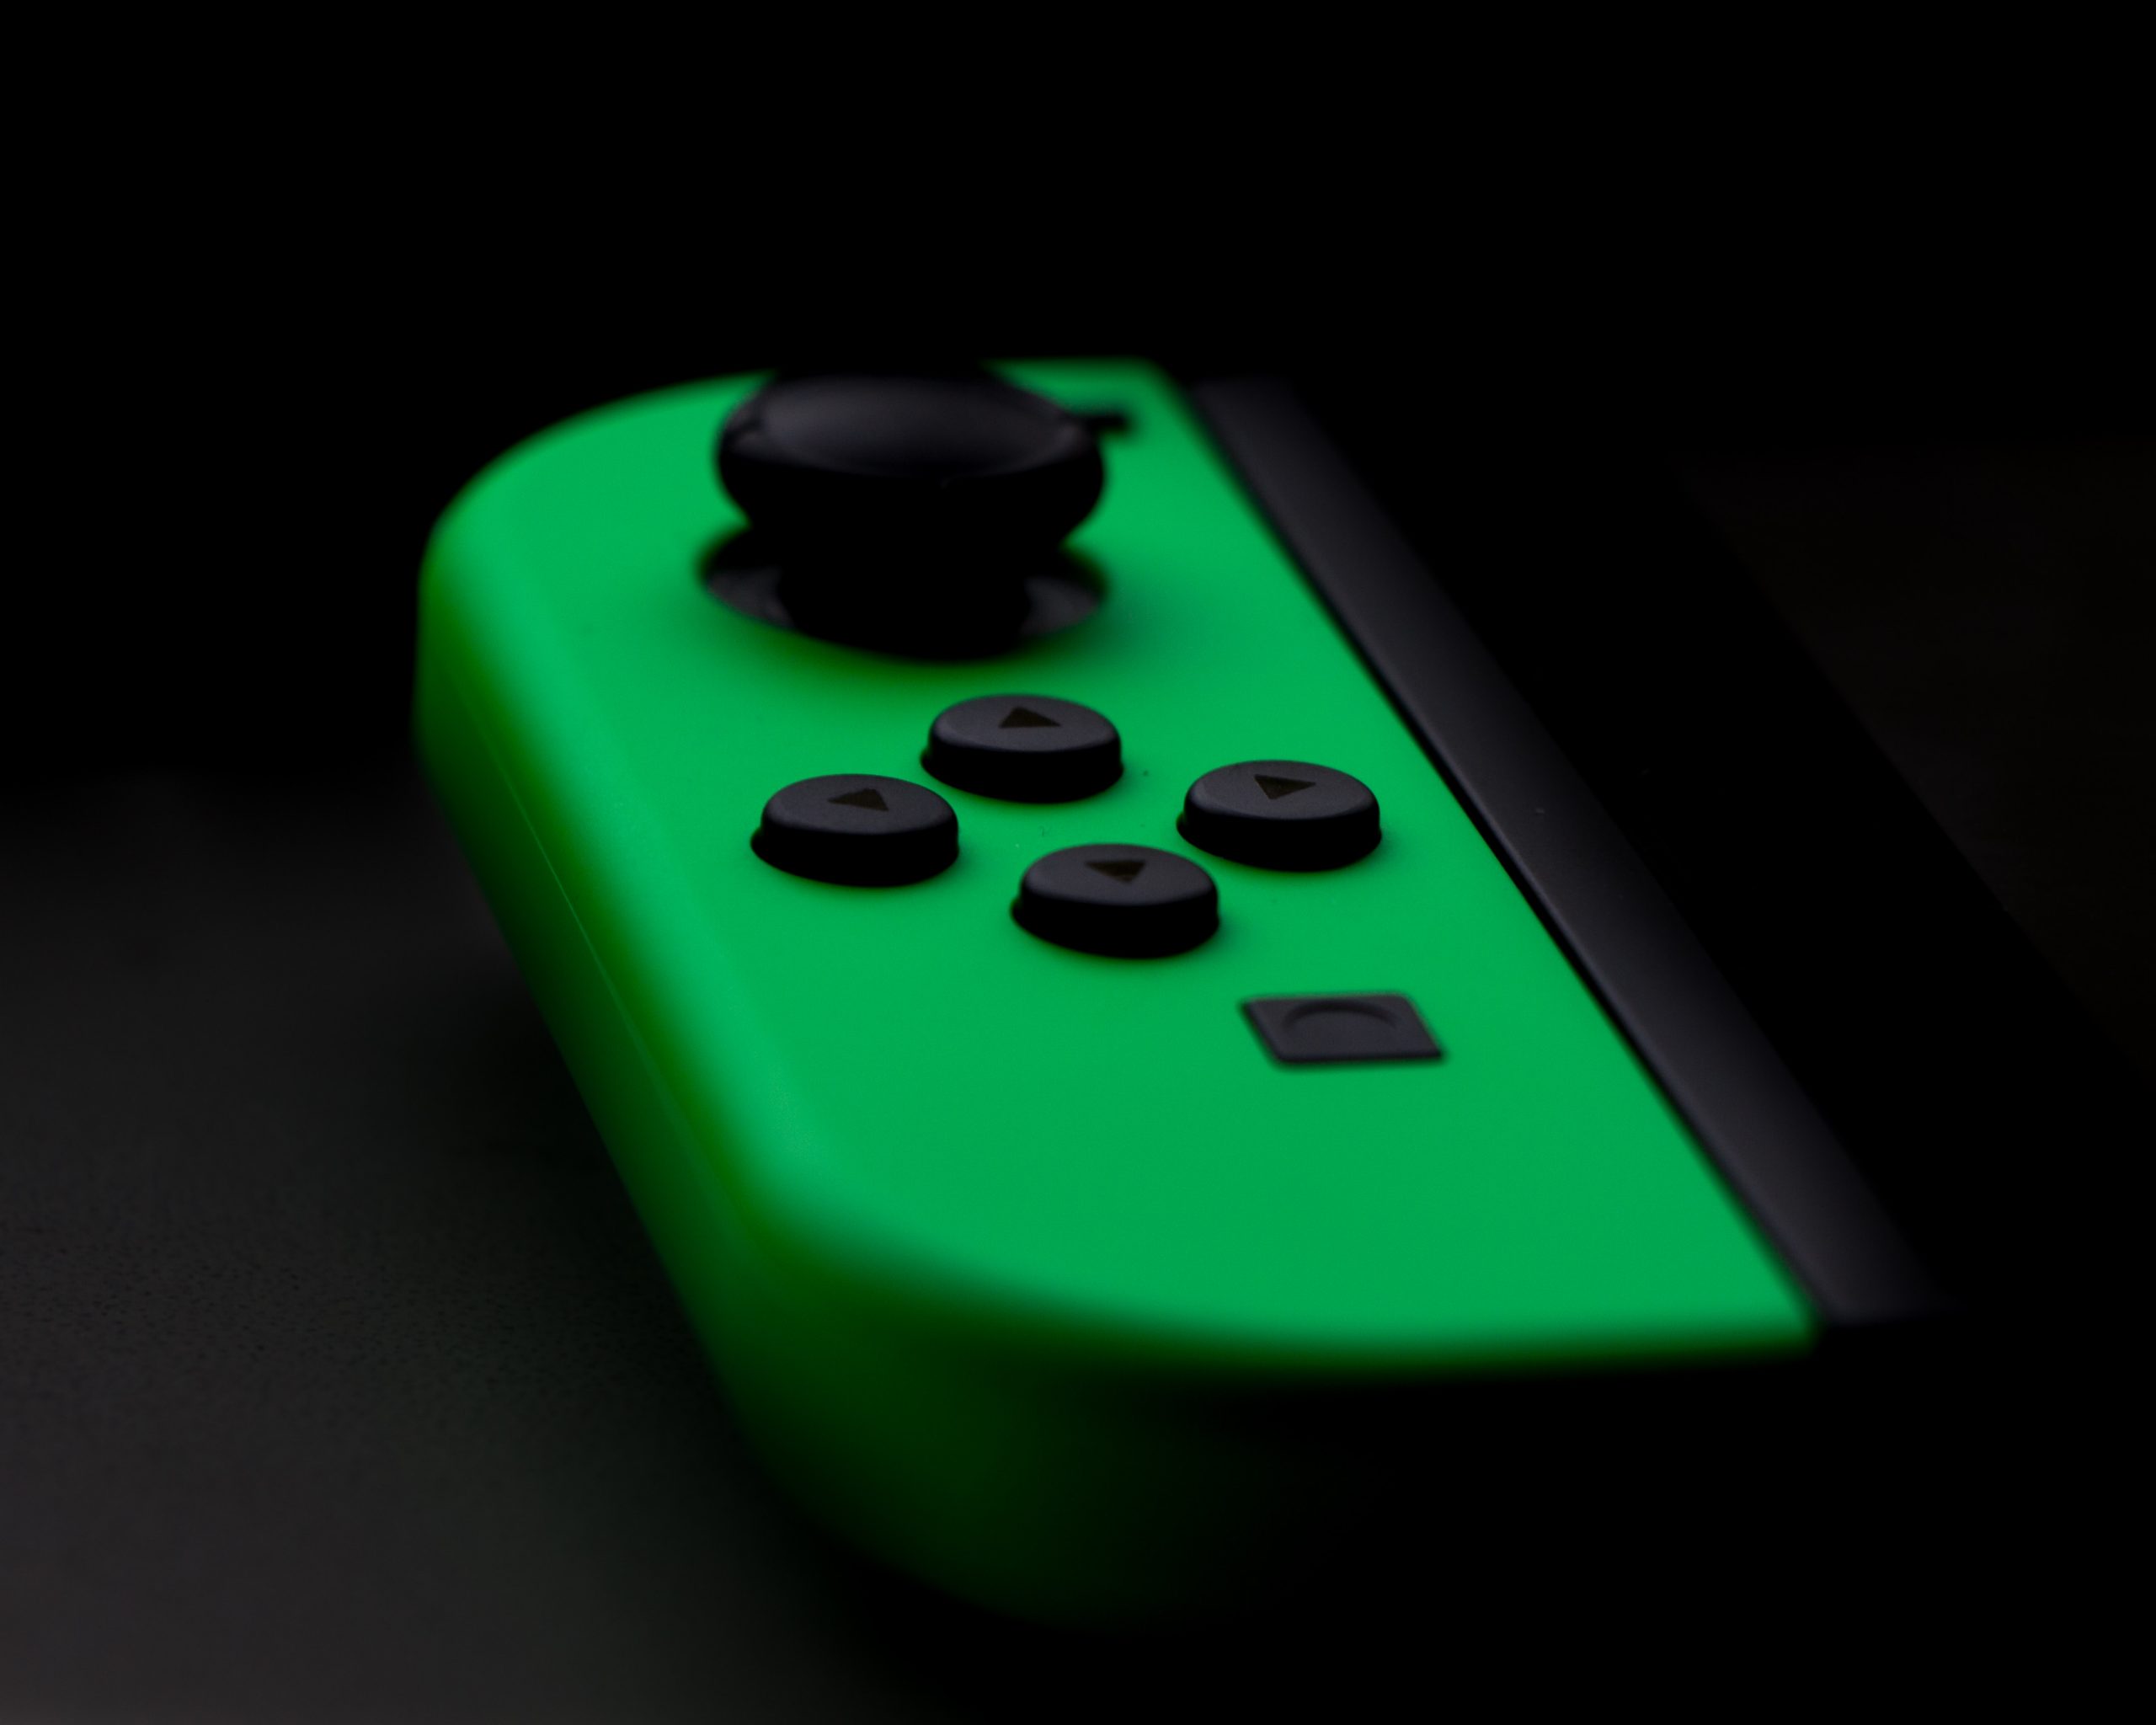 Nintendo Switch enfrenta alegação francesa de ‘obsolescência planejada’